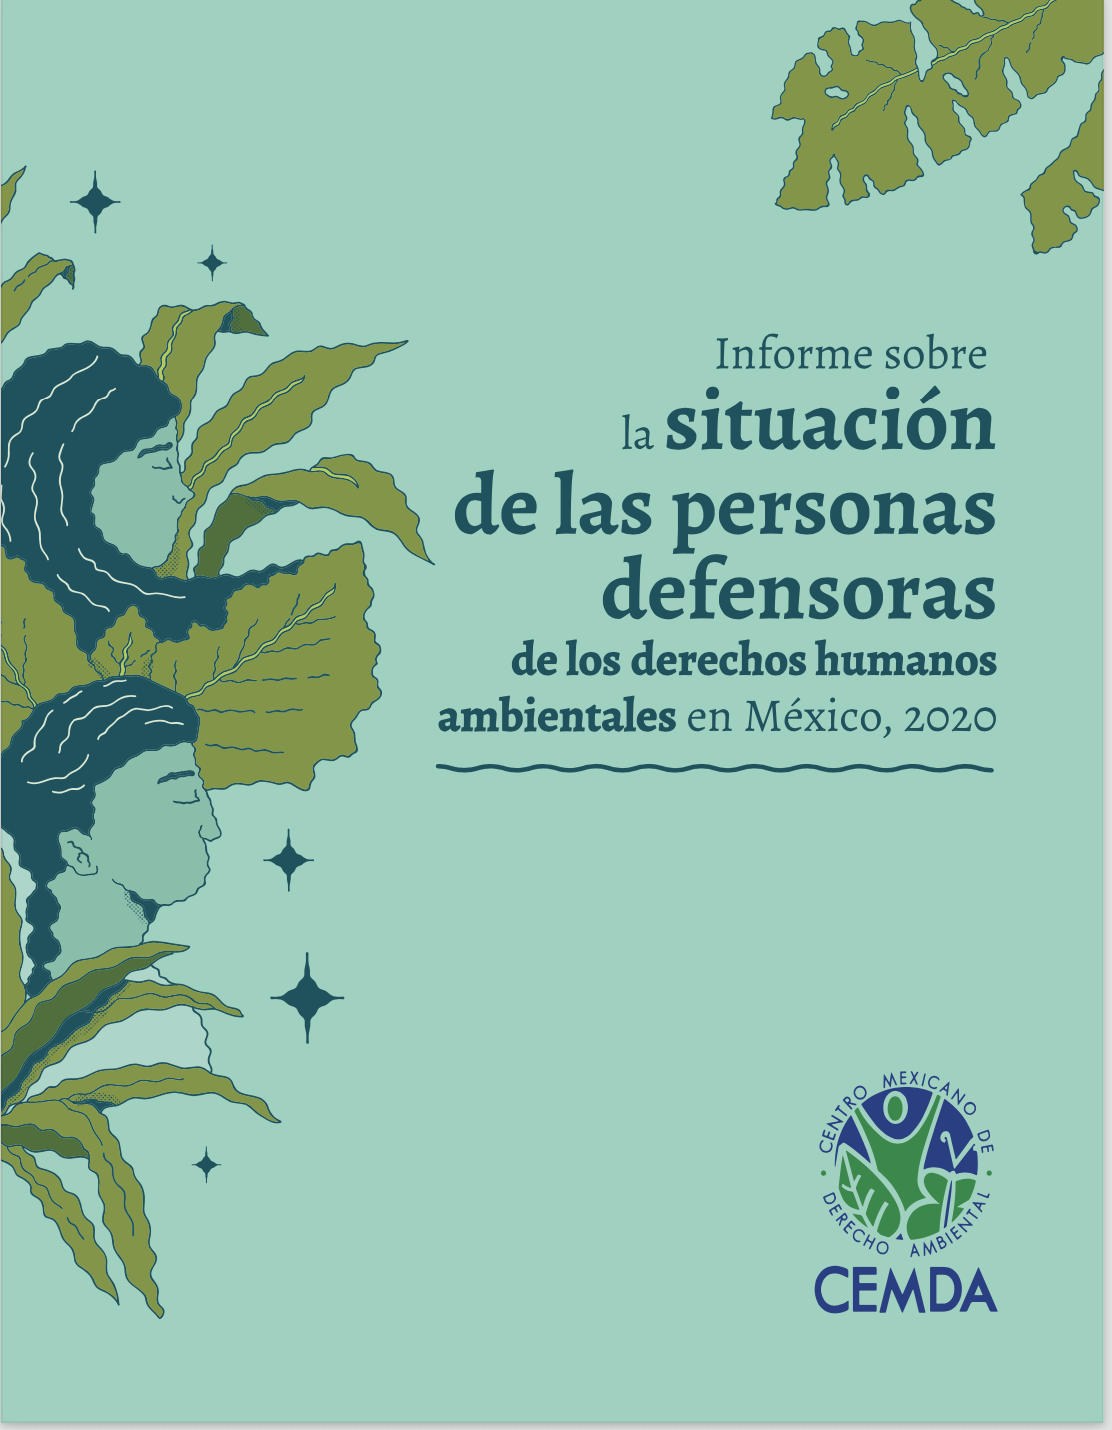 Informe sobre la situación de las personas defensoras de los derechos humanos ambientales en México, 2020 (CEMDA)